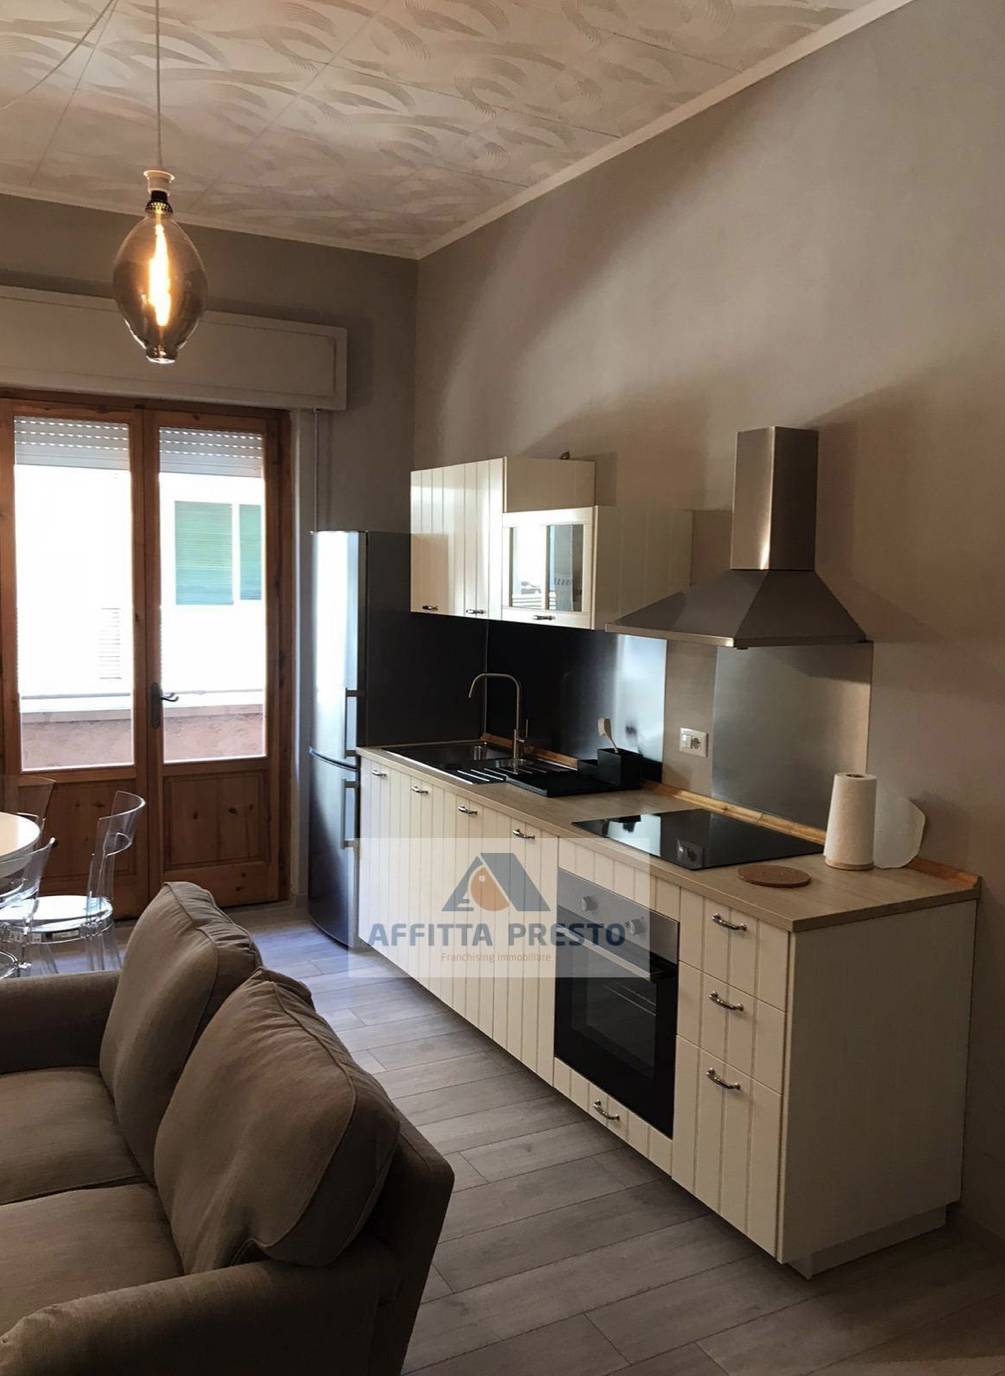 Appartamento in affitto a Montecatini-Terme, 3 locali, prezzo € 800 | PortaleAgenzieImmobiliari.it